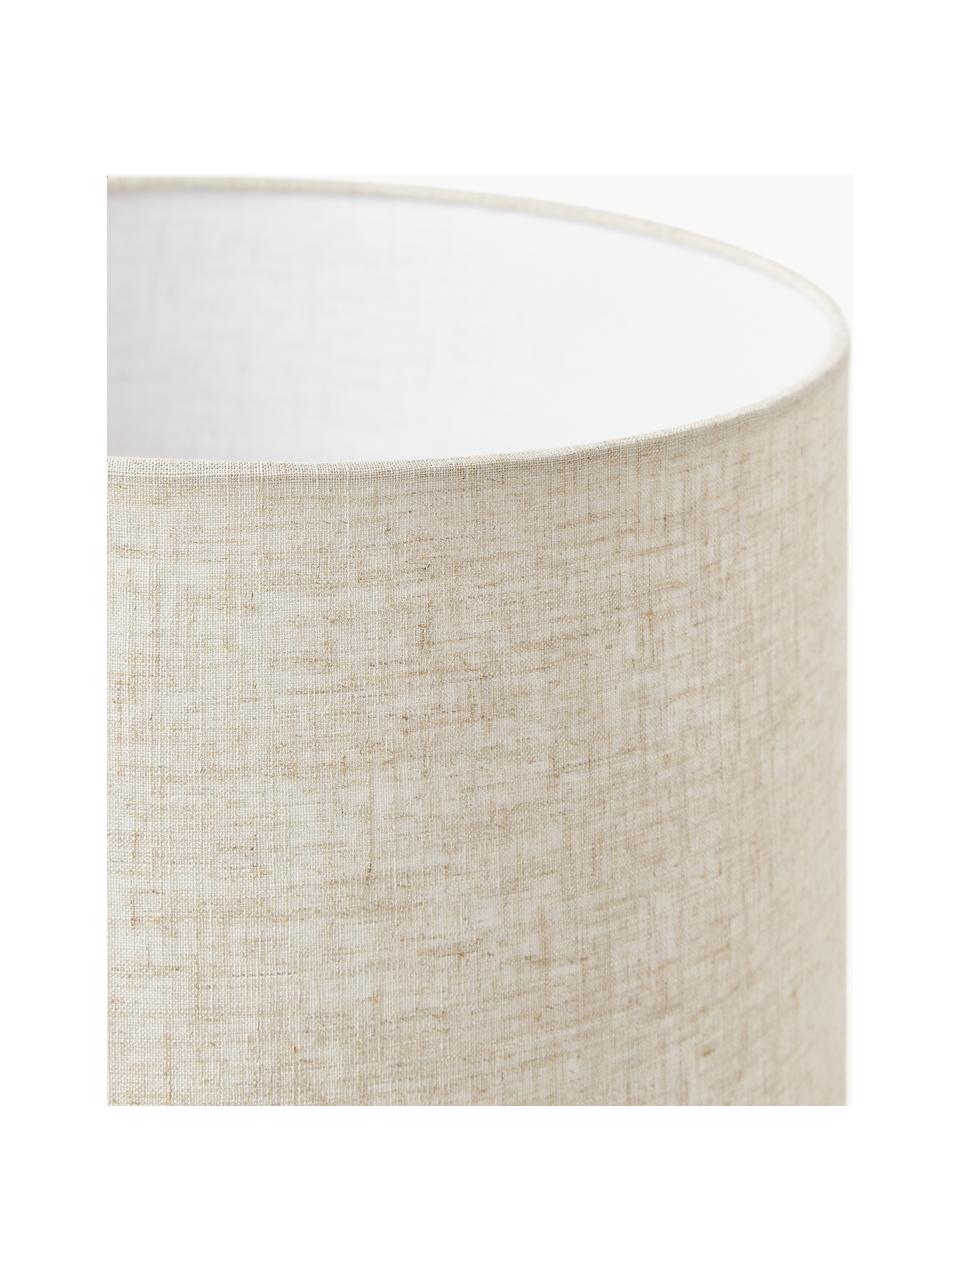 Grosse Keramik-Tischlampe Colett in organischer Form, Lampenschirm: Leinengemisch, Beige, Off White, Ø 35 x H 53 cm